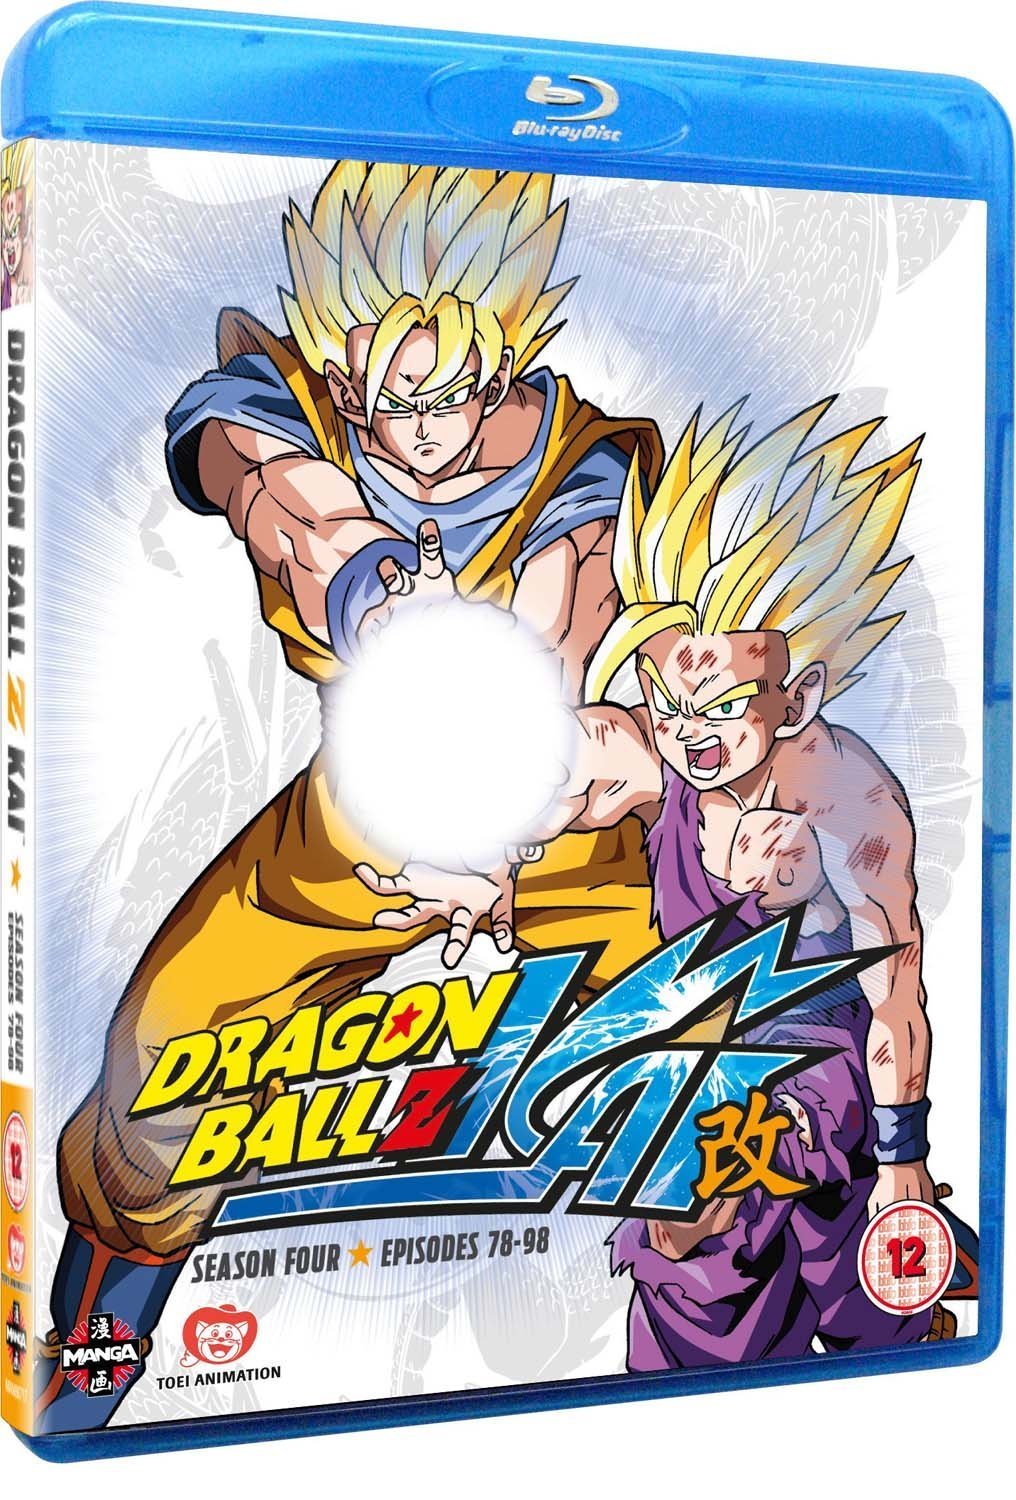 Dragon Ball Z Kai (TV Series 2009– )